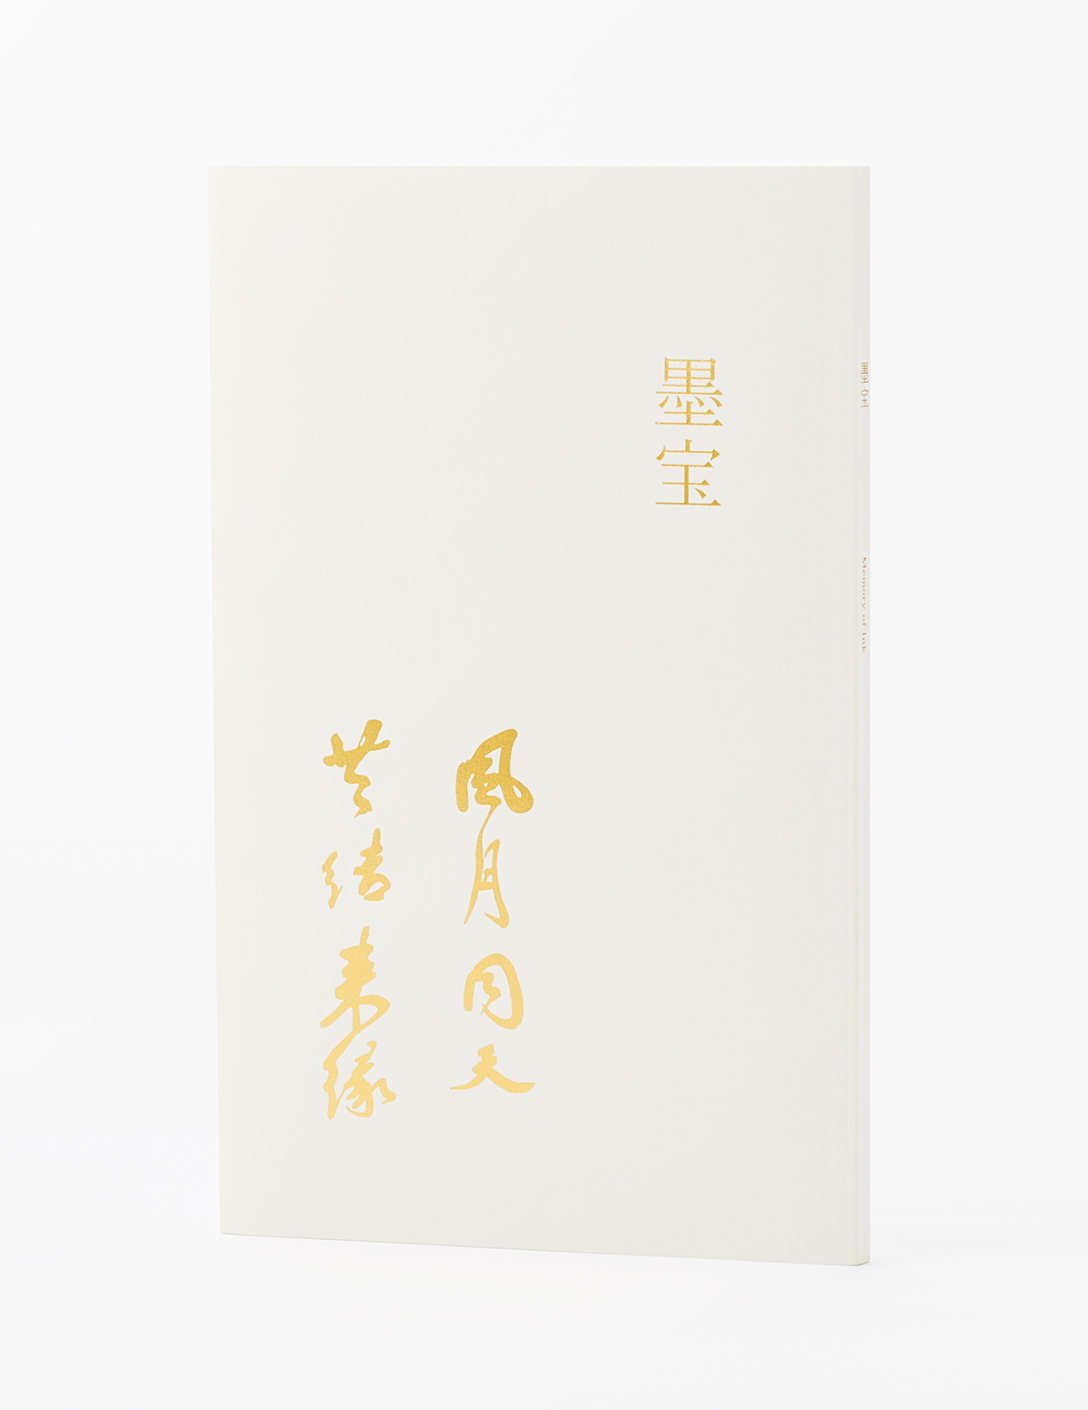 藤田观光创立60周年纪念刊行本《墨宝》